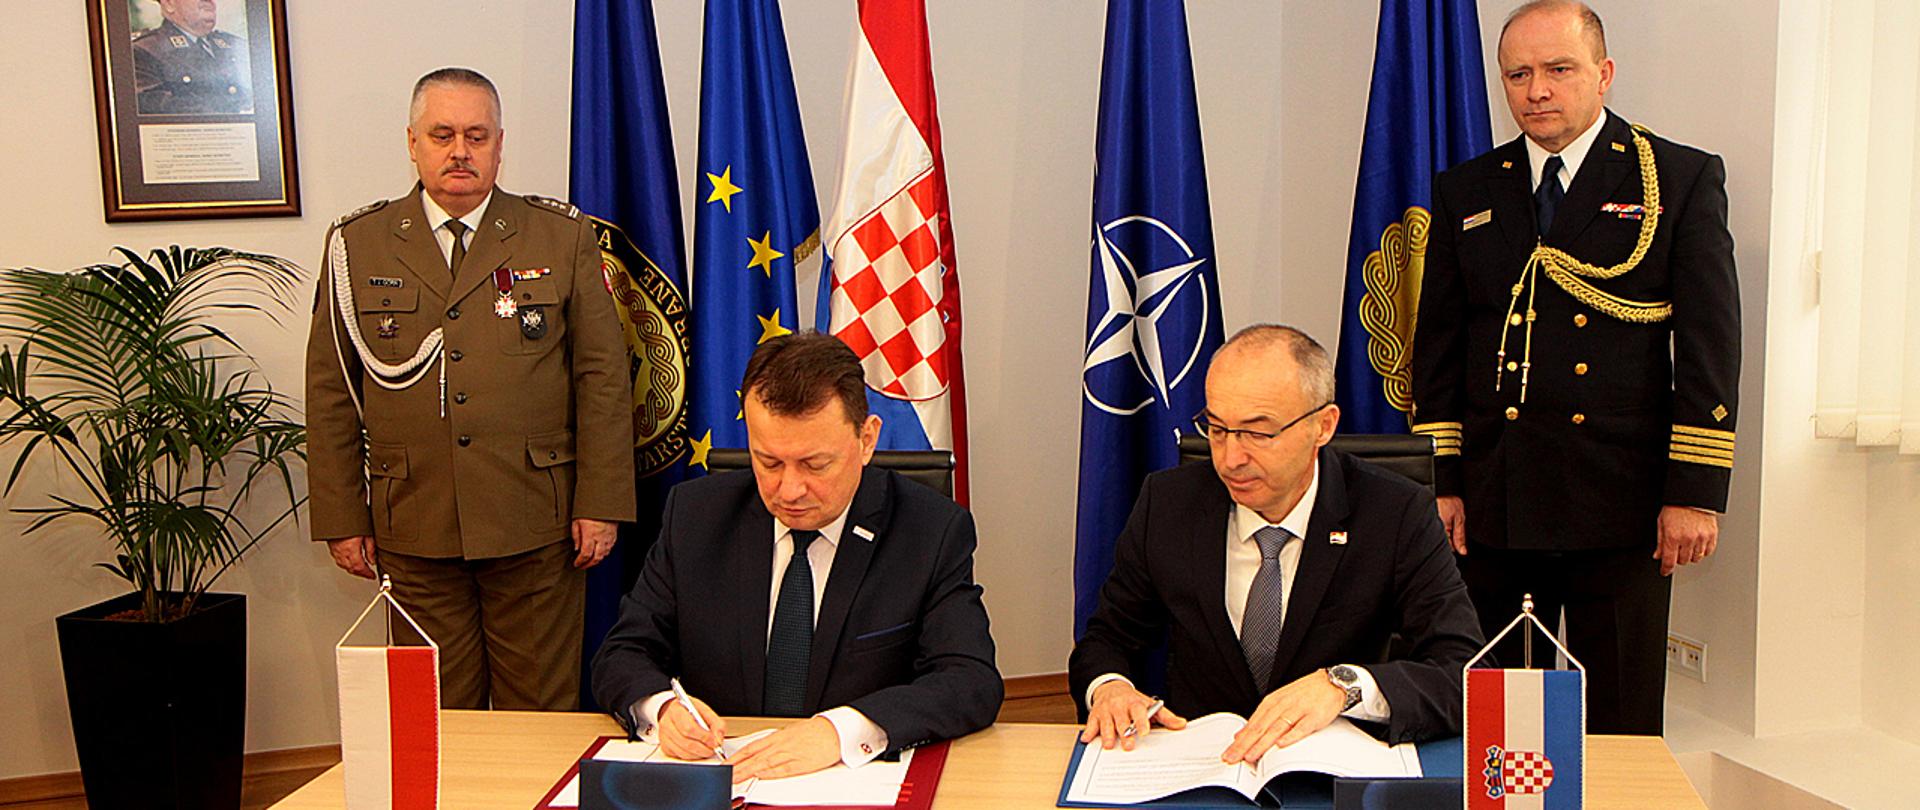 Podpisanie umowy o współpracy wojskowej pomiędzy Polską a Chorwacją.